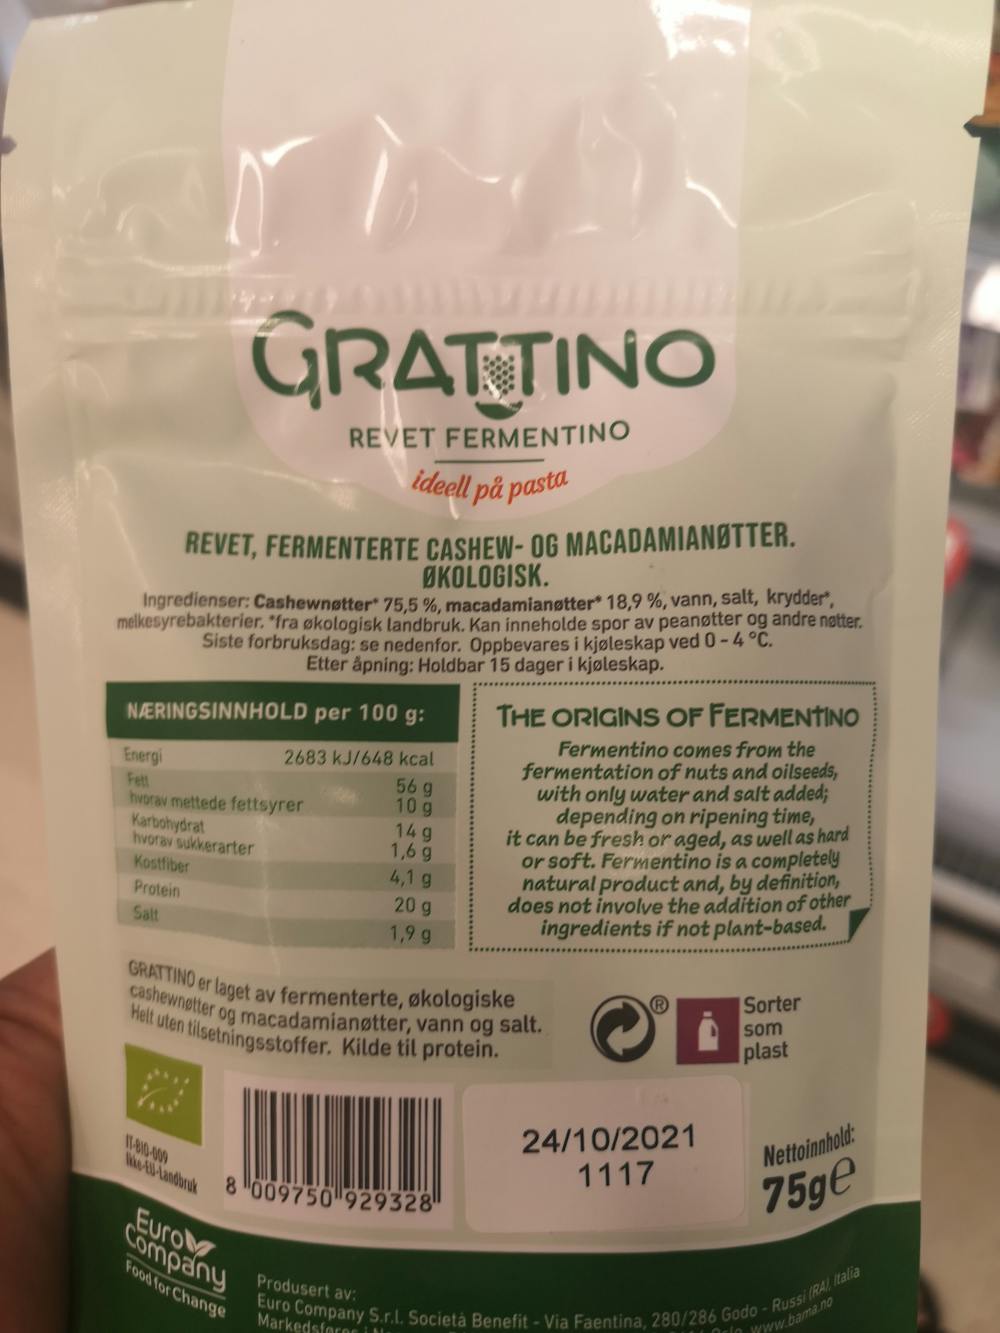 Ingredienslisten til Revet fermentino, Grattino